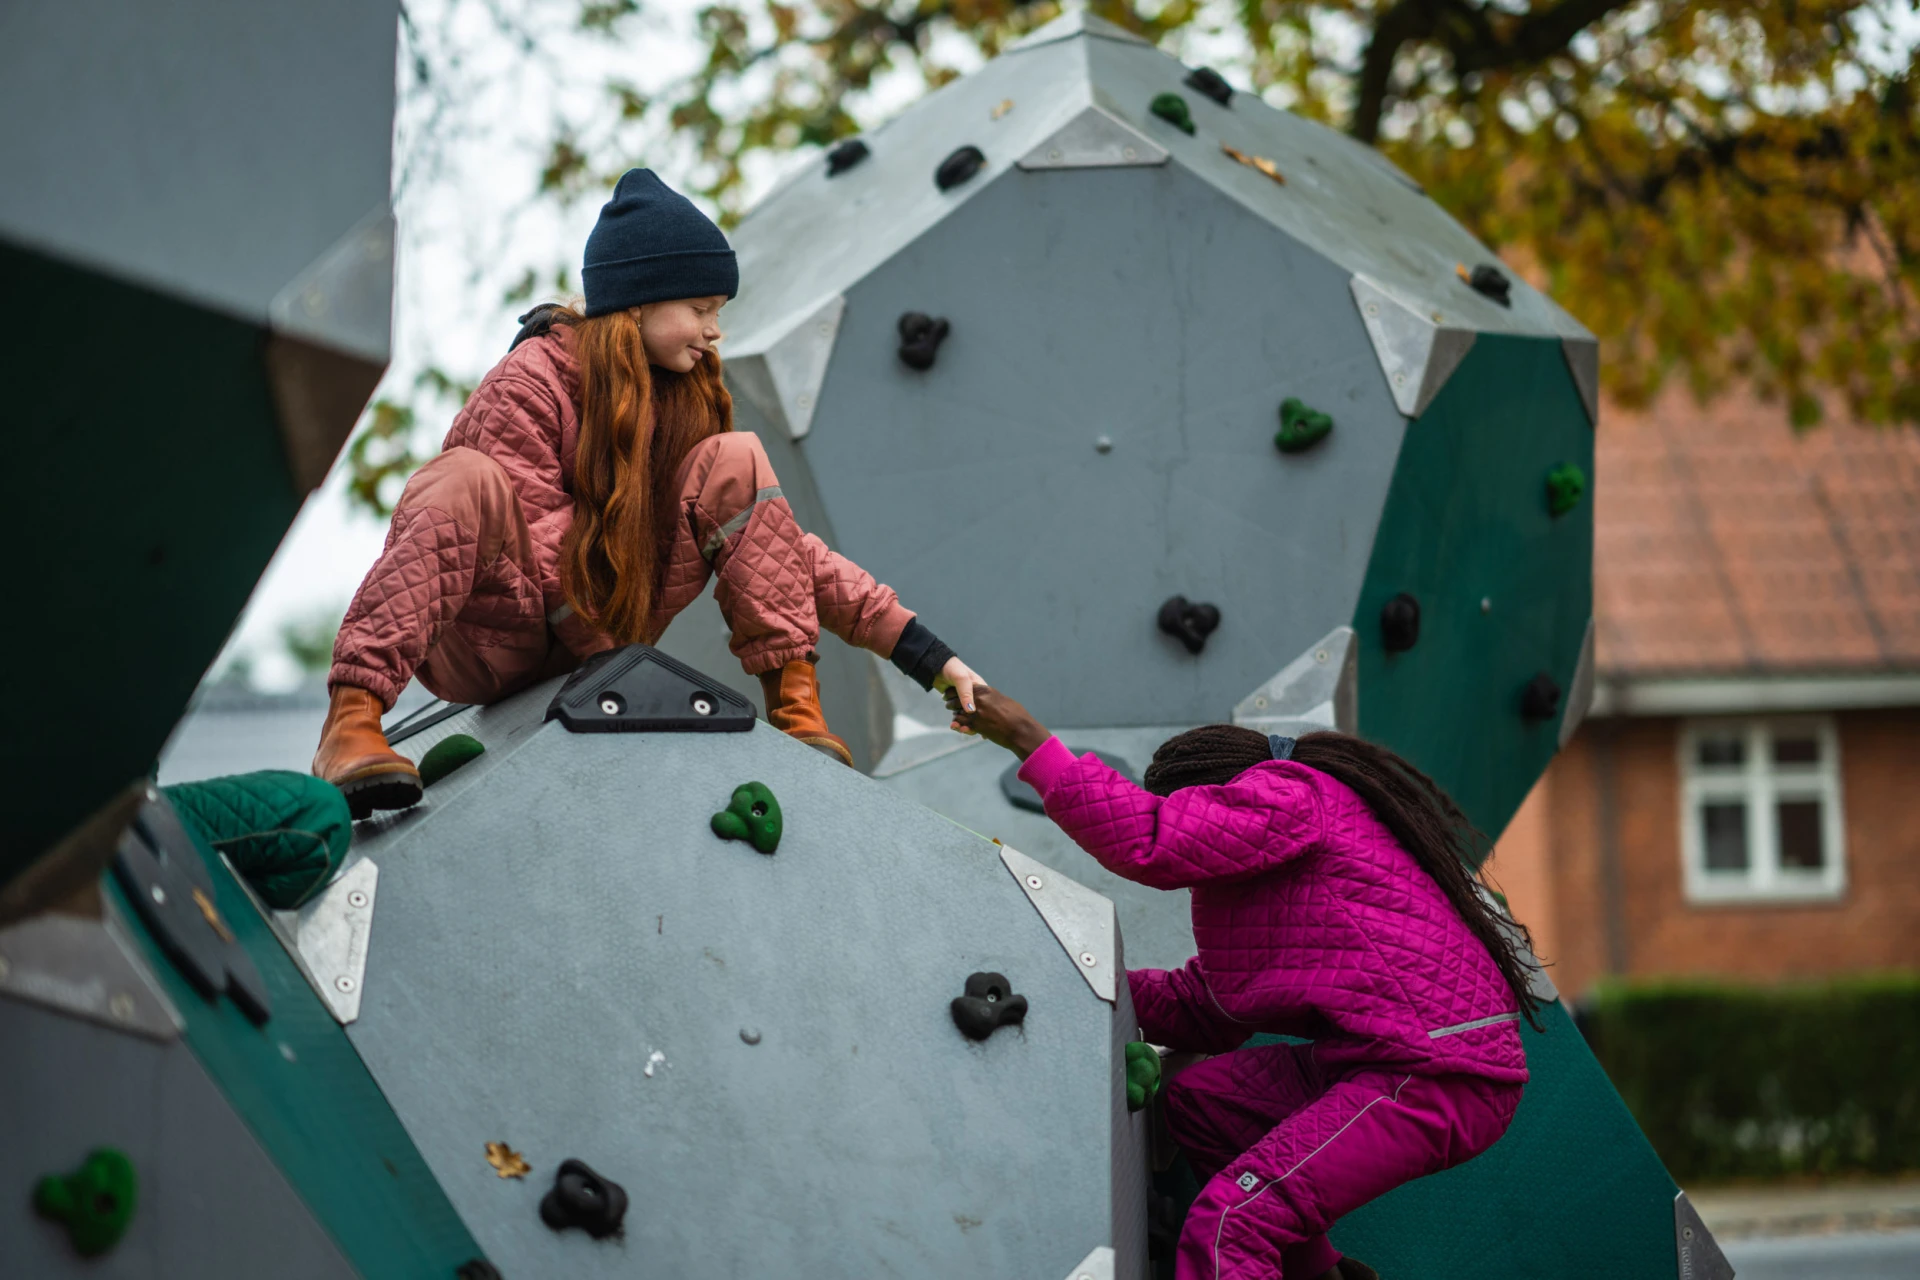 Een meisje helpt een ander meisje met klimmen op een klimstructuur op een speelplaats